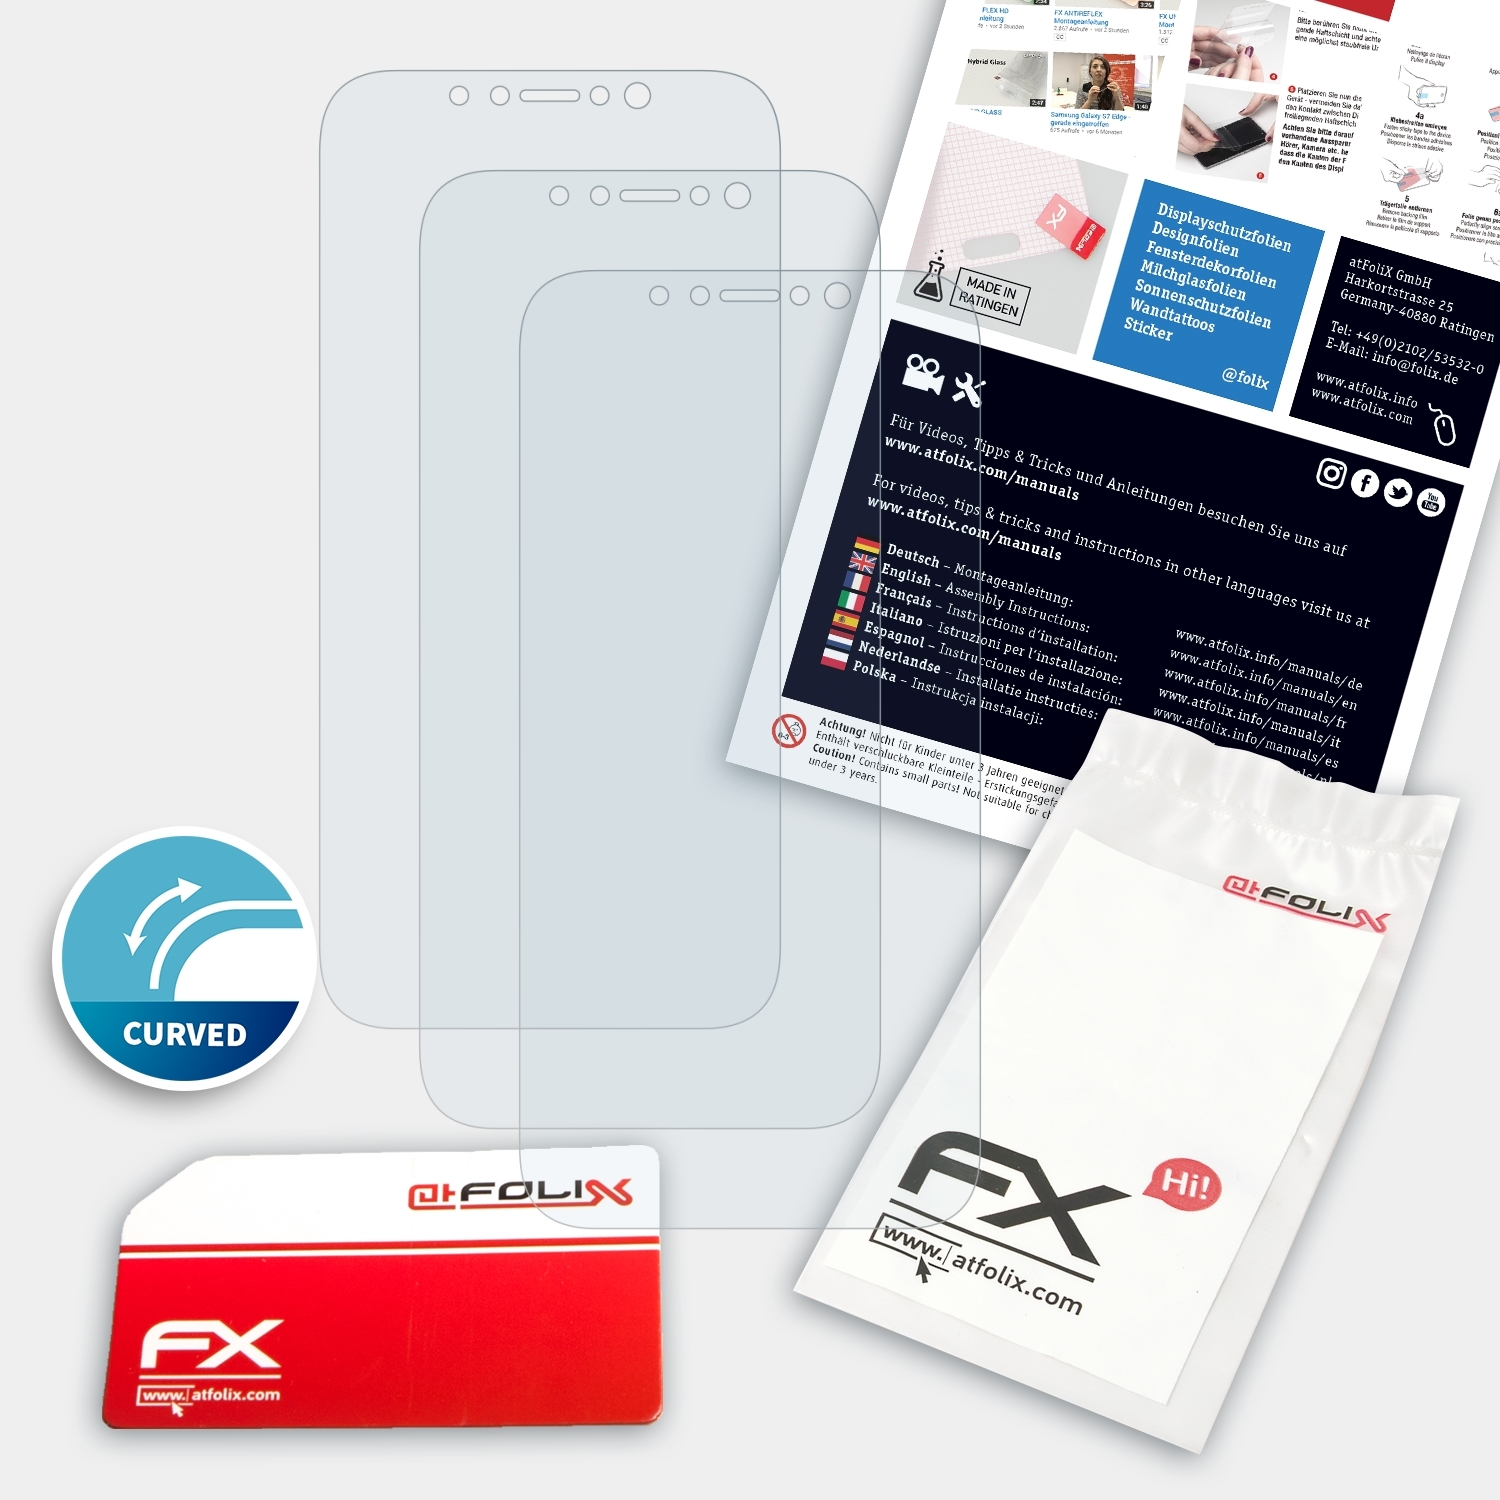 ATFOLIX 3x FX-ActiFleX Displayschutz(für Apple XR (Casefit)) iPhone